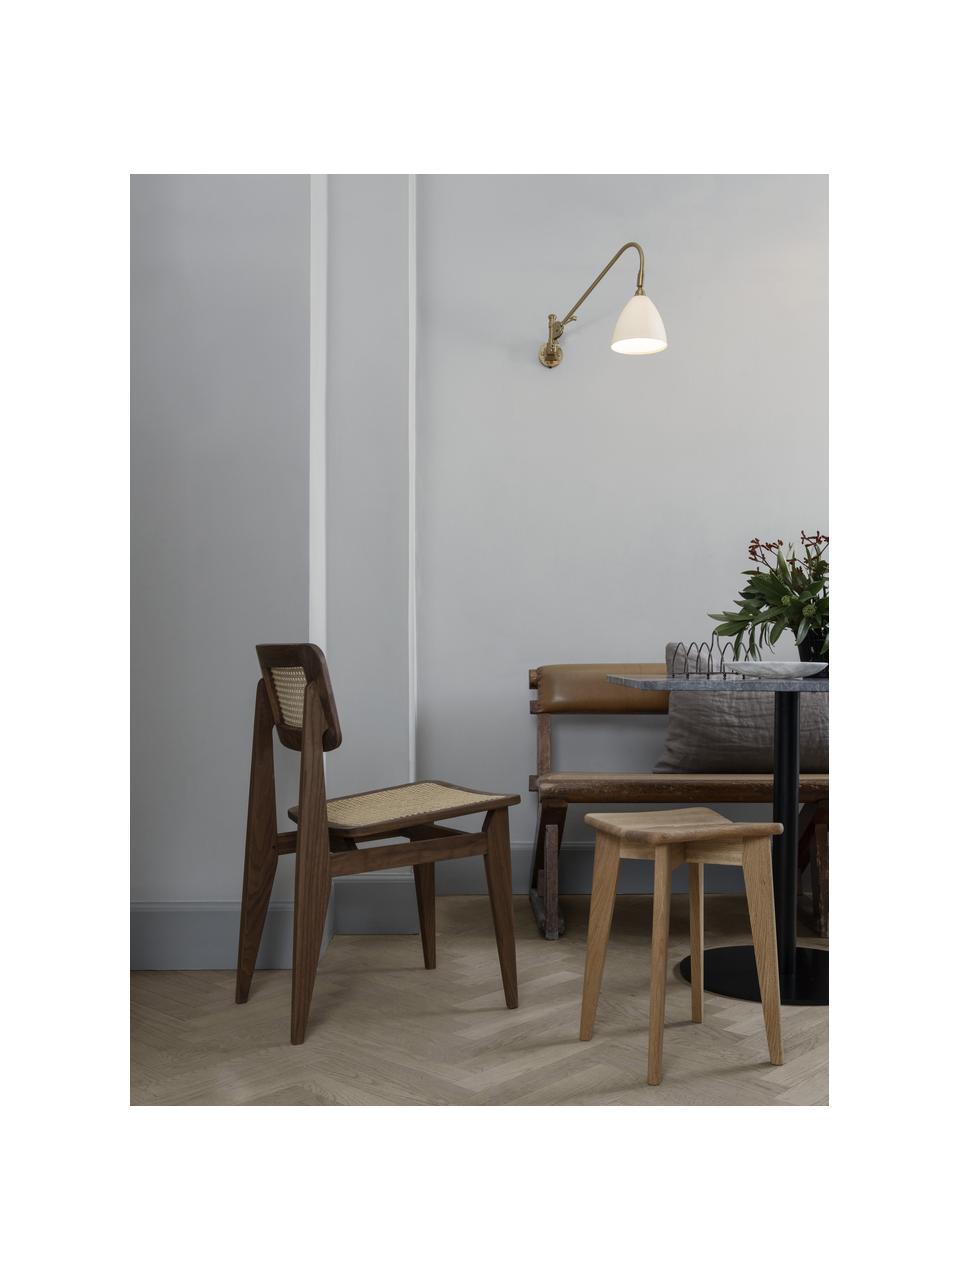 Sedia in legno di noce con intreccio viennese C-Chair, Struttura: legno di noce oliato, Legno di noce, beige chiaro, Larg. 41 x Prof. 53 cm